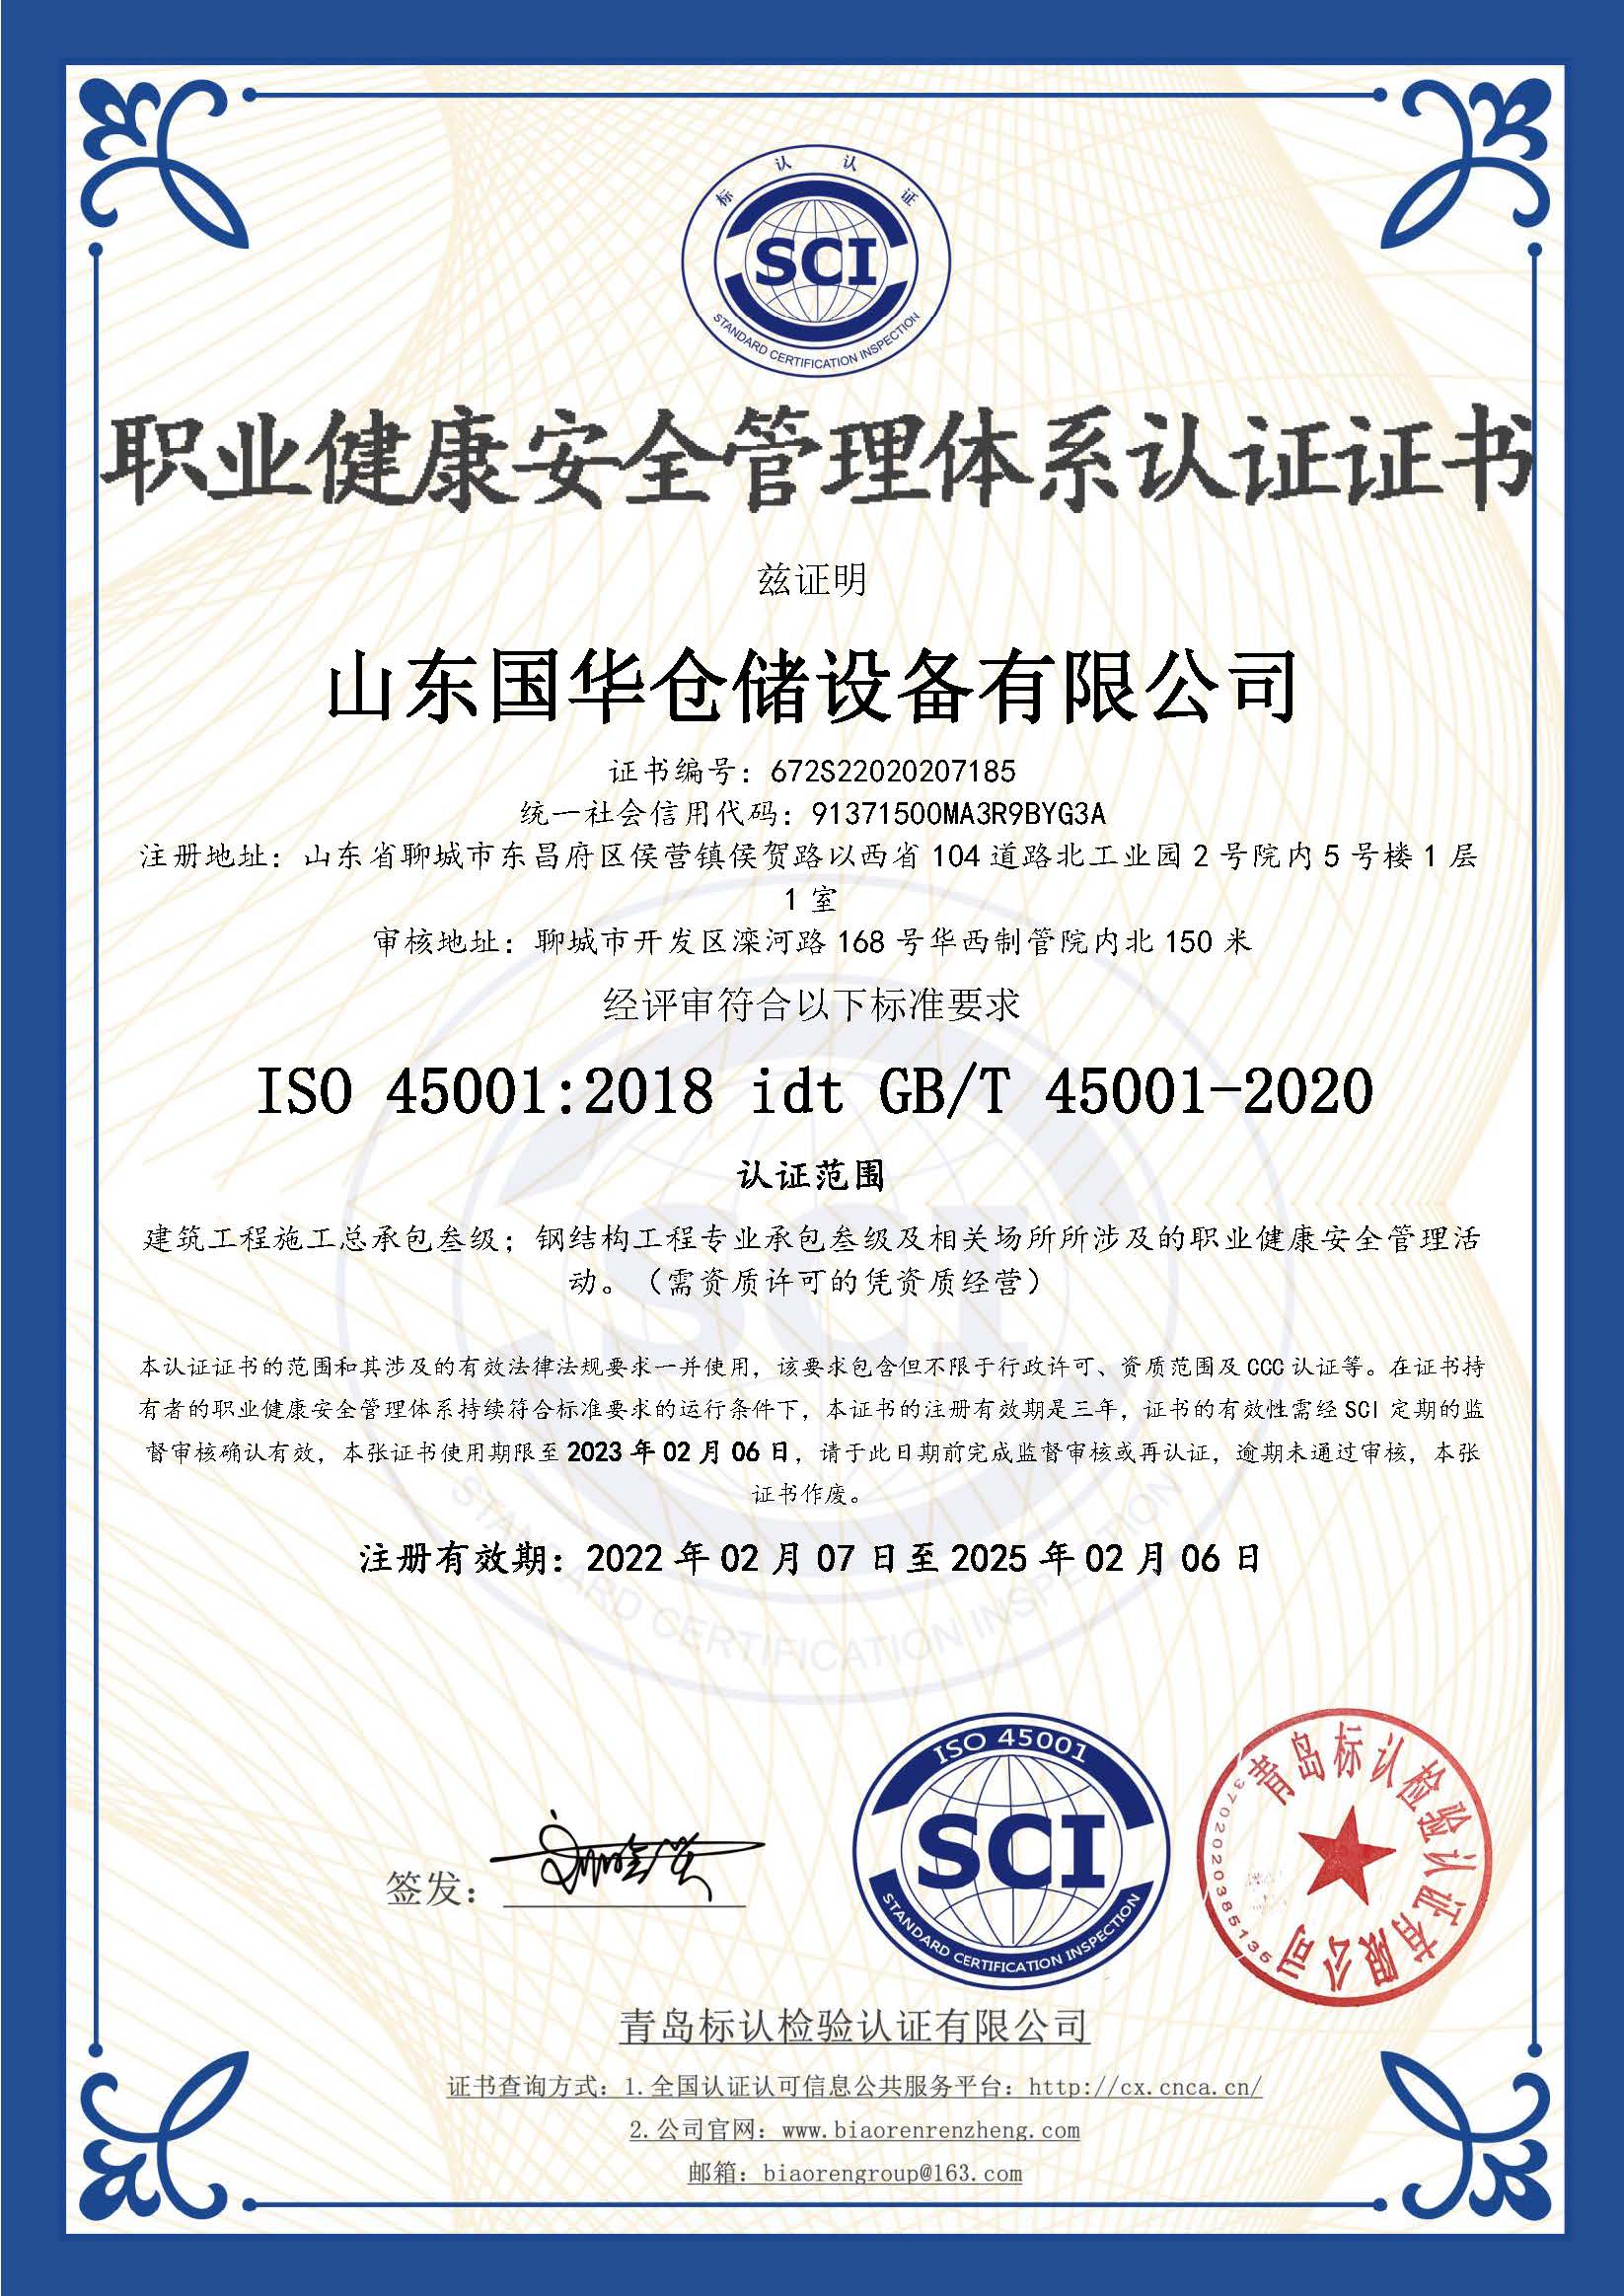 甘肃钢板仓职业健康安全管理体系认证证书